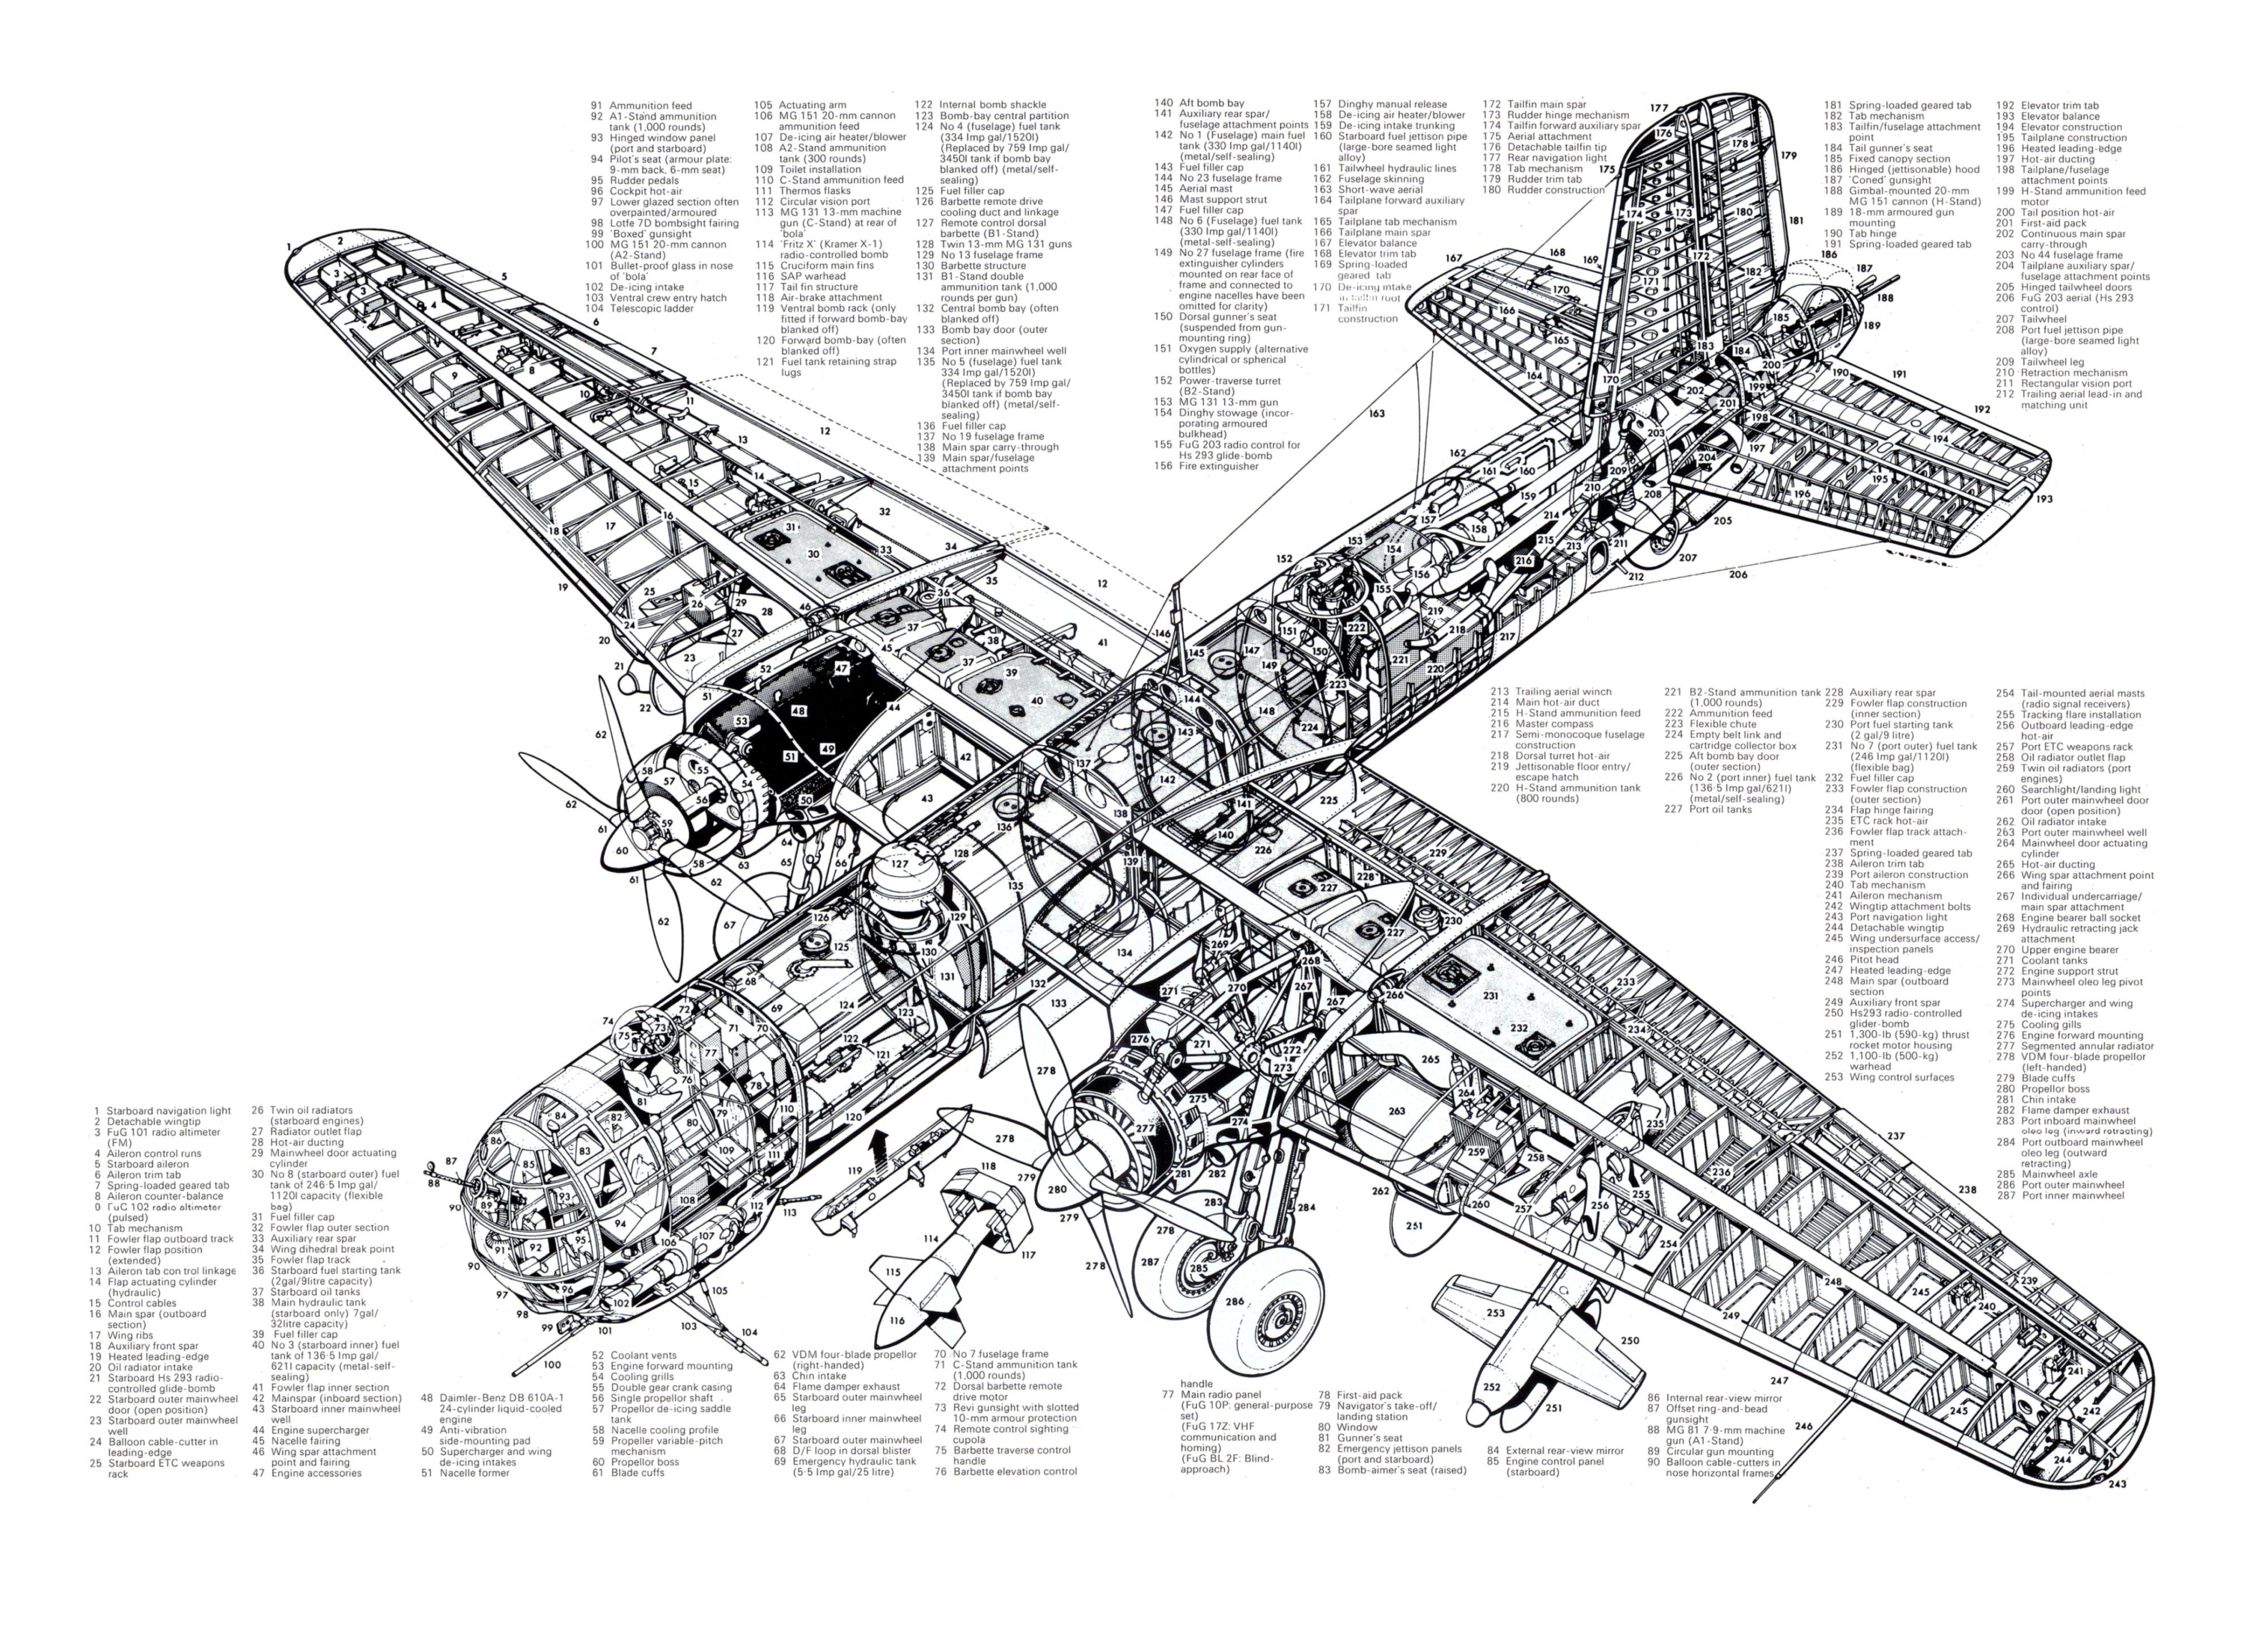 Heinkel He 177 Wallpapers